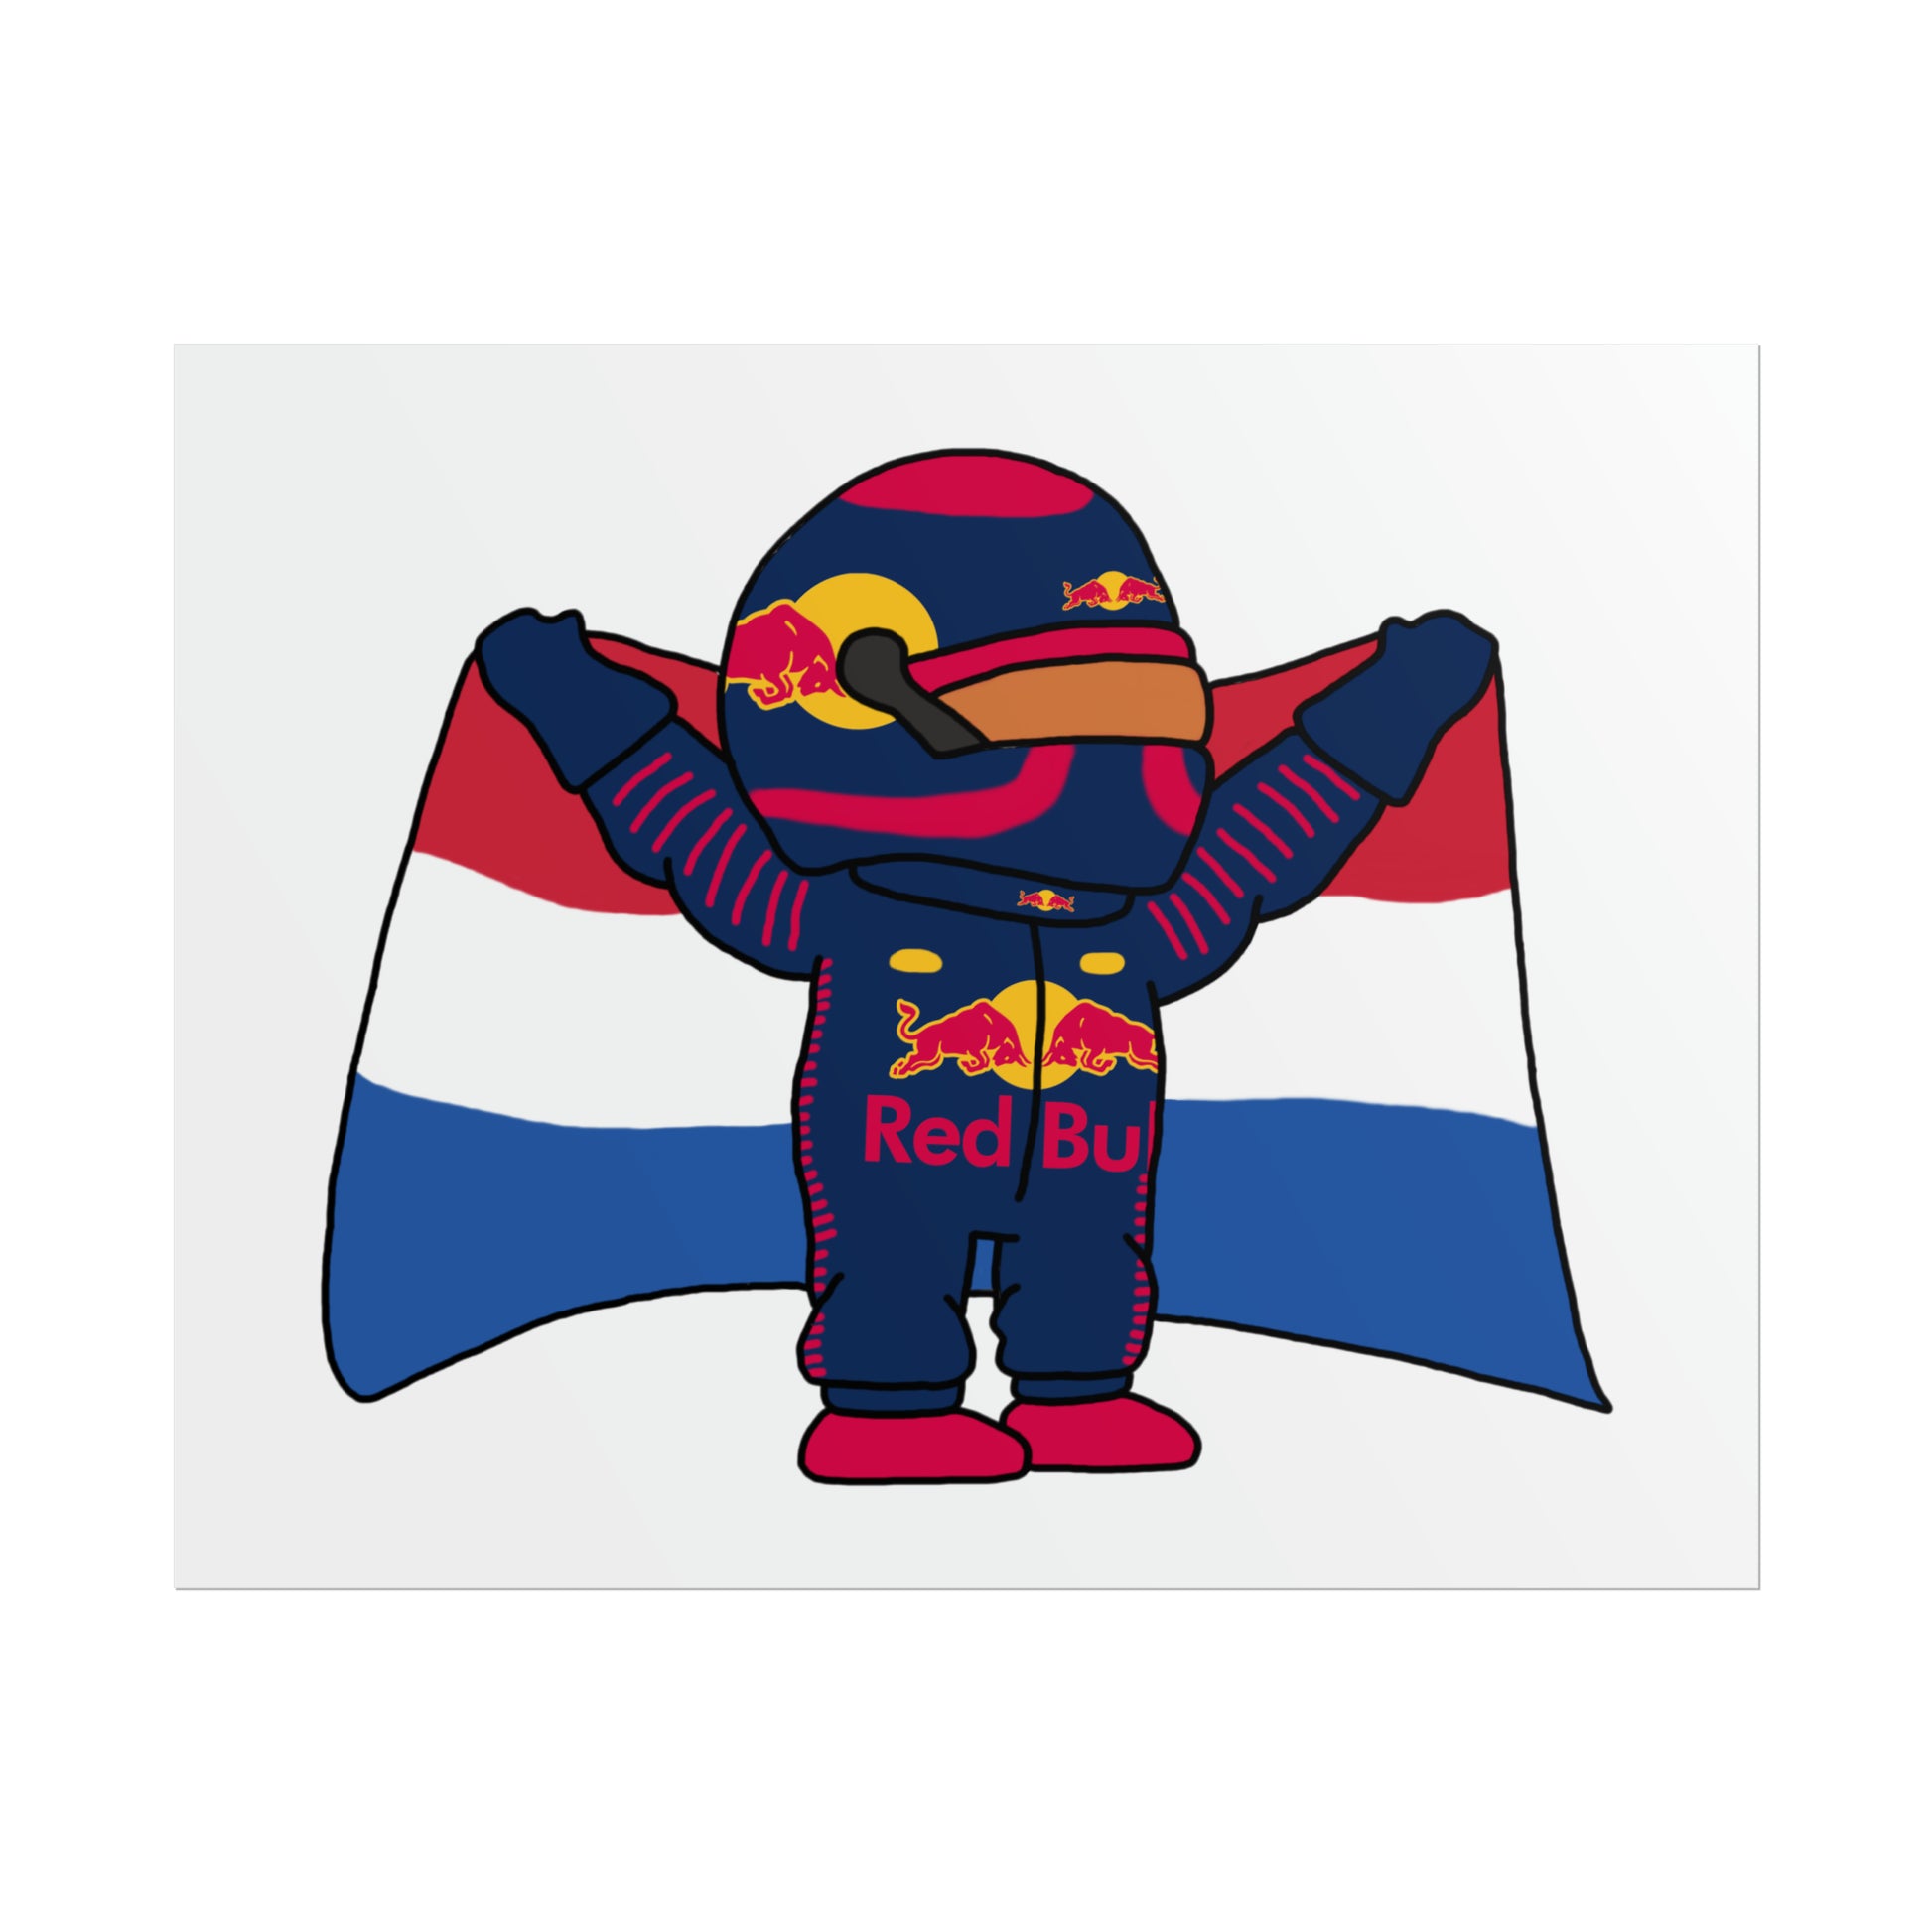 NeVerStappen Red Bull Formula 1 F1 Max Verstappen Poster Next Cult Brand F1, Max Verstappen, Red Bull